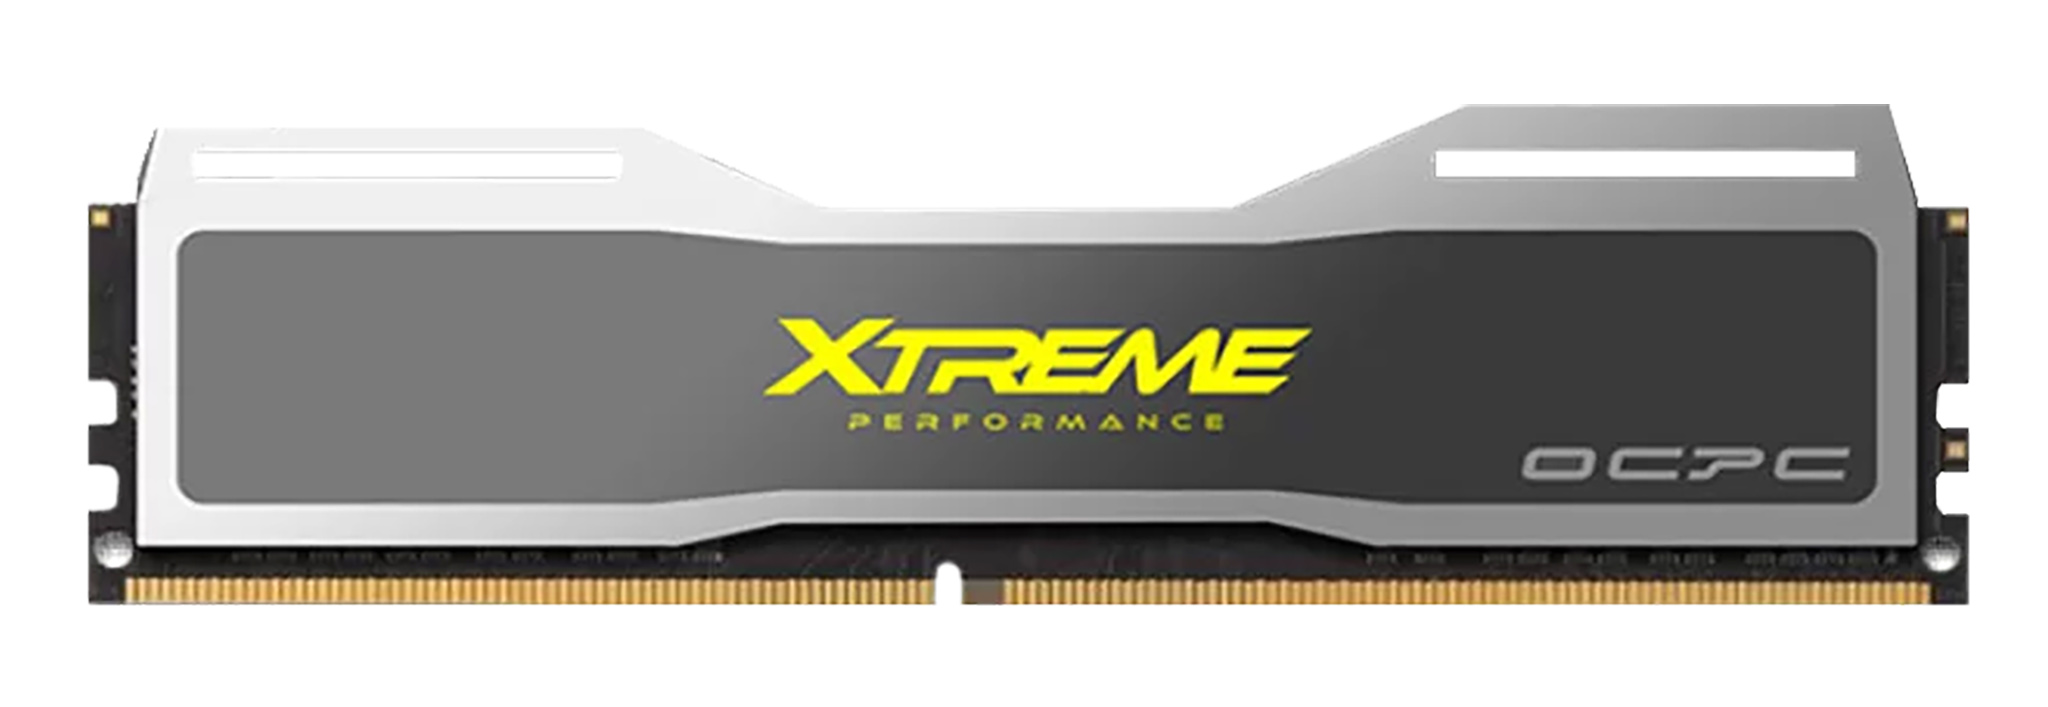 03-XTREME-DDR4-16GB-_8GBx2_-single-.jpg